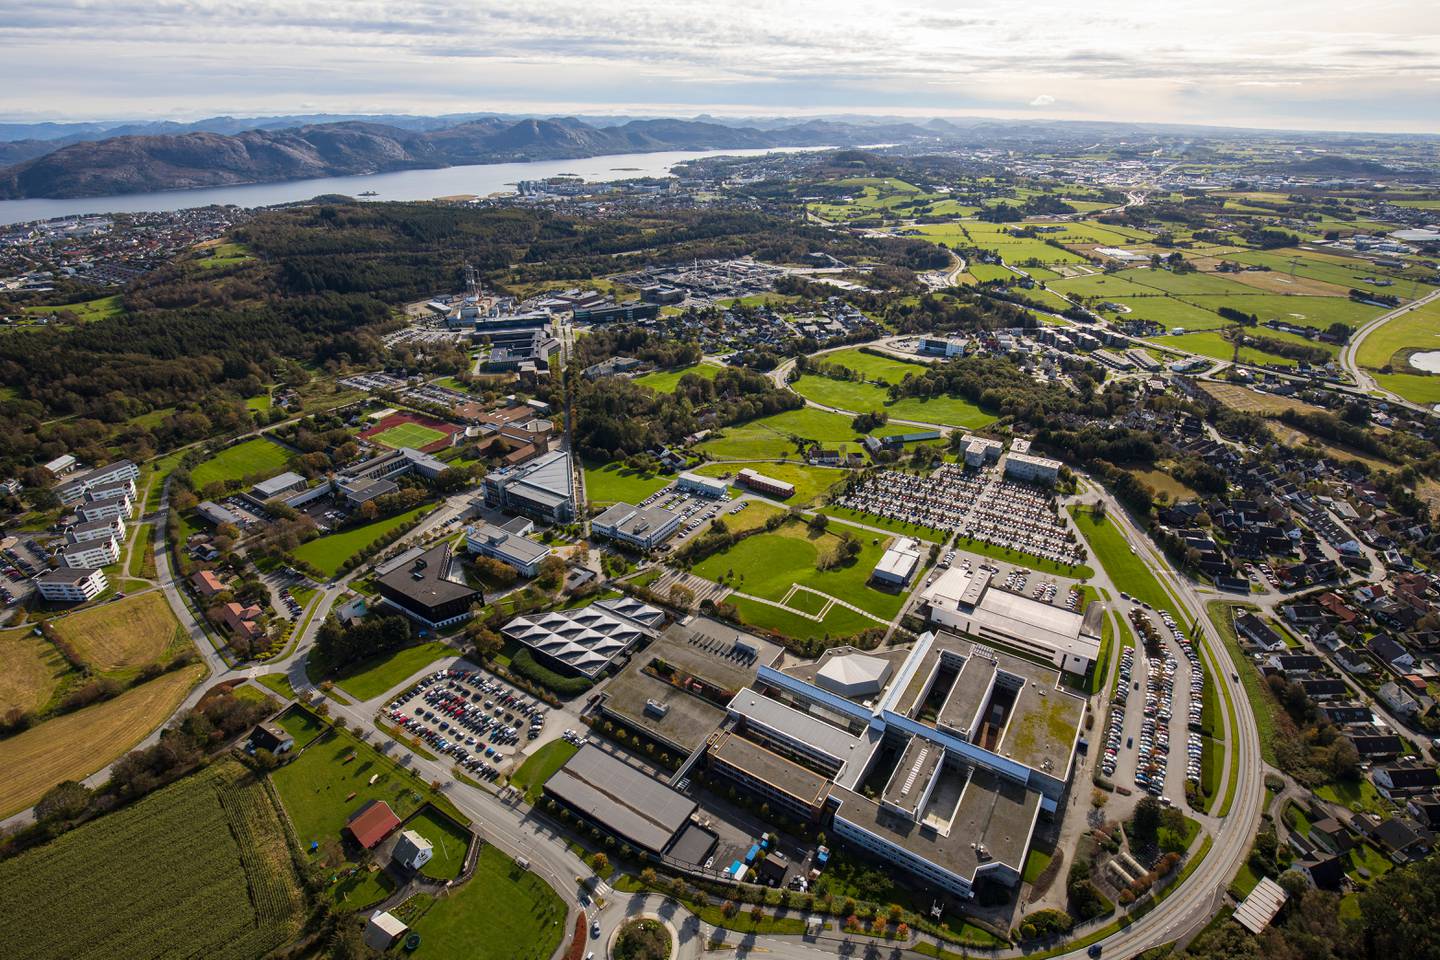 Universitet i Stavanger har et sikkerhetsmiljø i særklasse. Dette er koblinger som gir regionen et spesielt fortrinn med tunge fagmiljøer, skriver Nordtun.